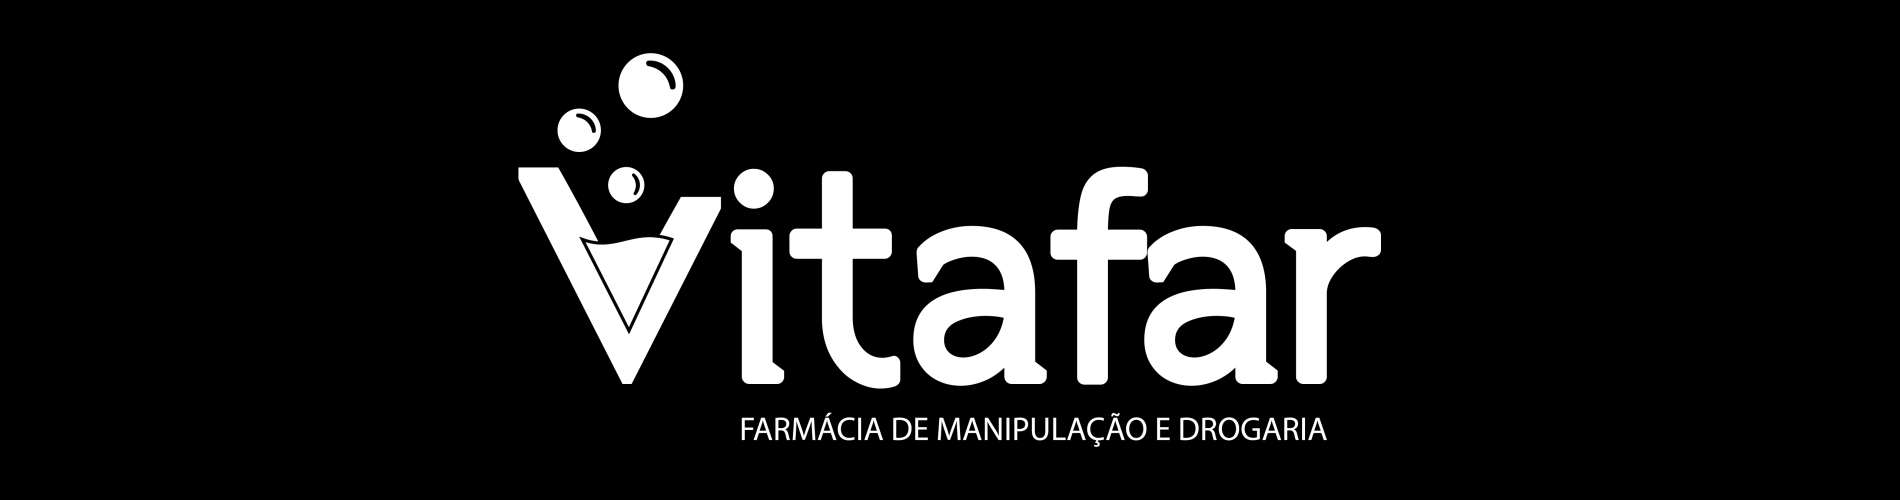 VitaFar